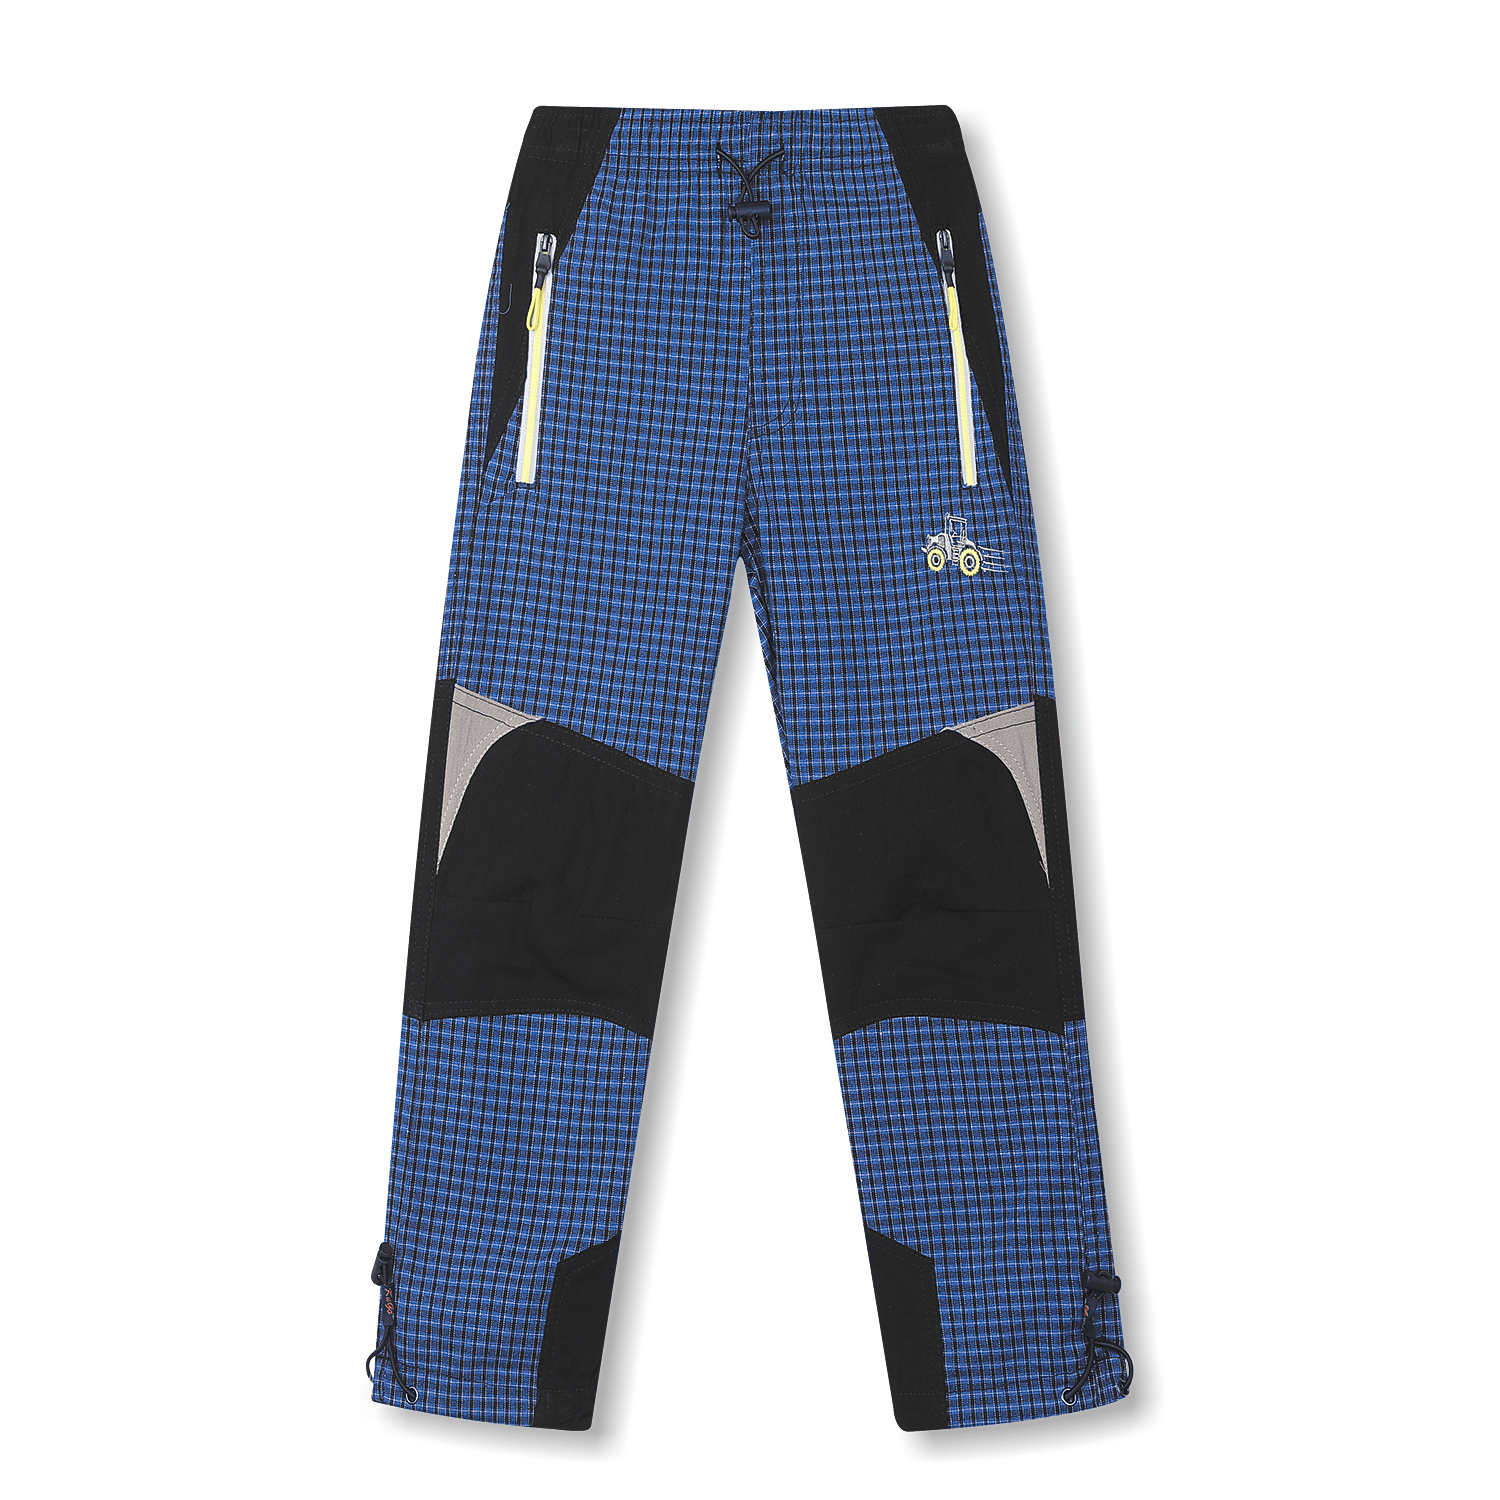 Chlapecké plátěné kalhoty - KUGO FK6660, modrá Barva: Modrá, Velikost: 98